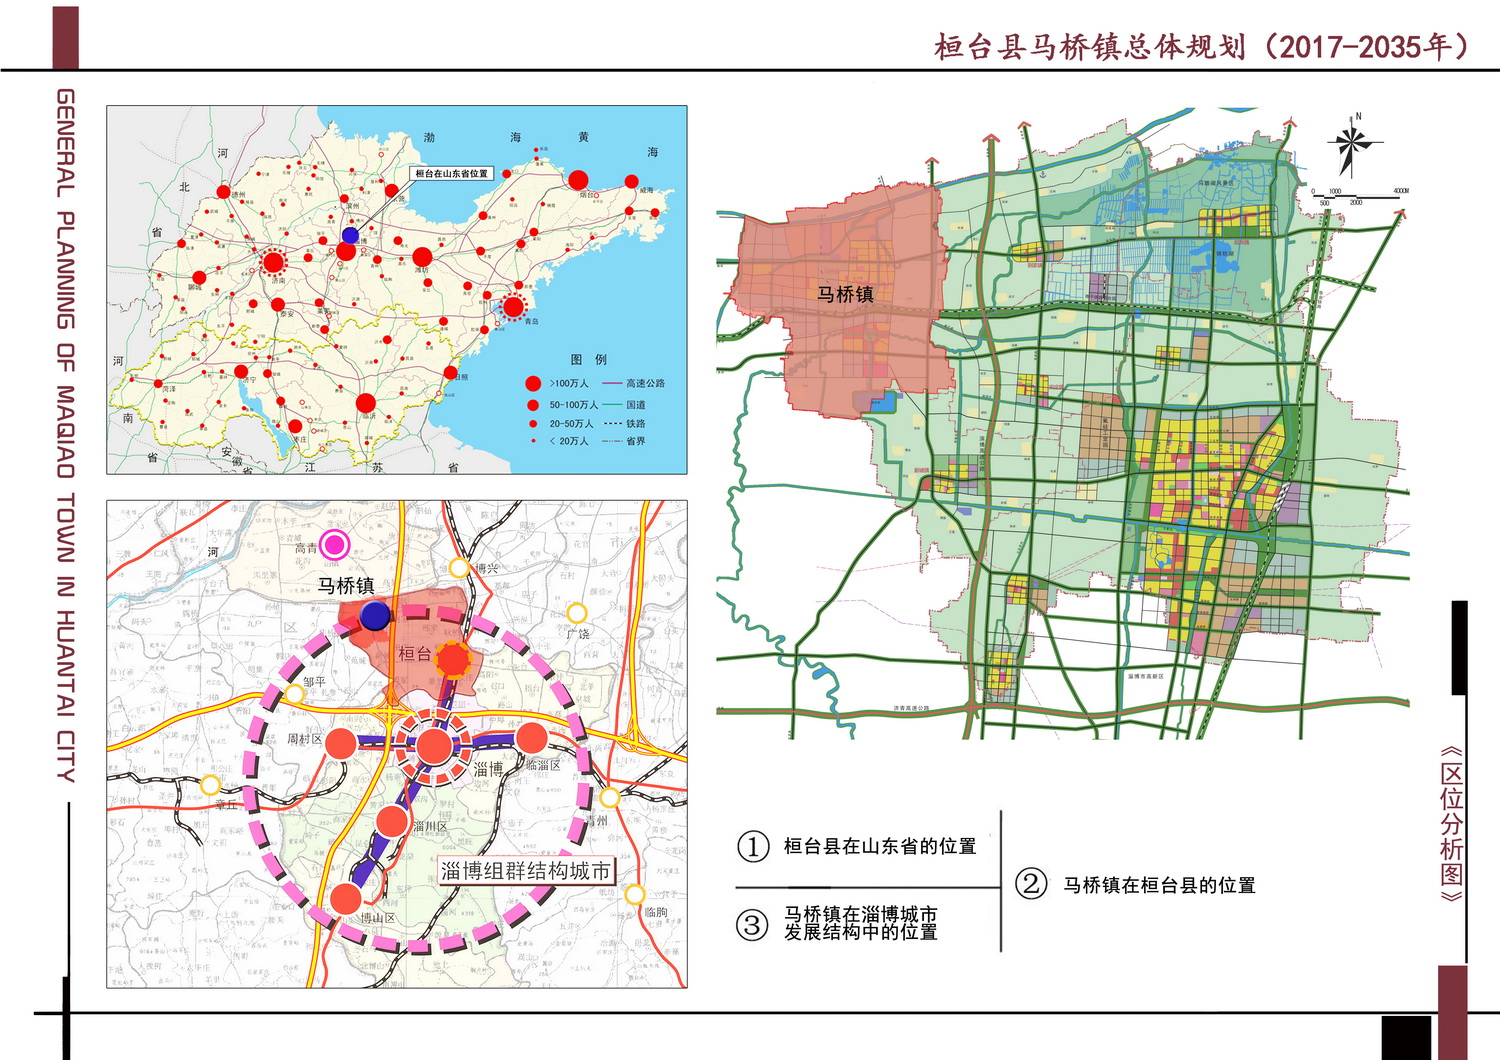 [转载]《桓台县马桥镇总体规划(2017-2035)》